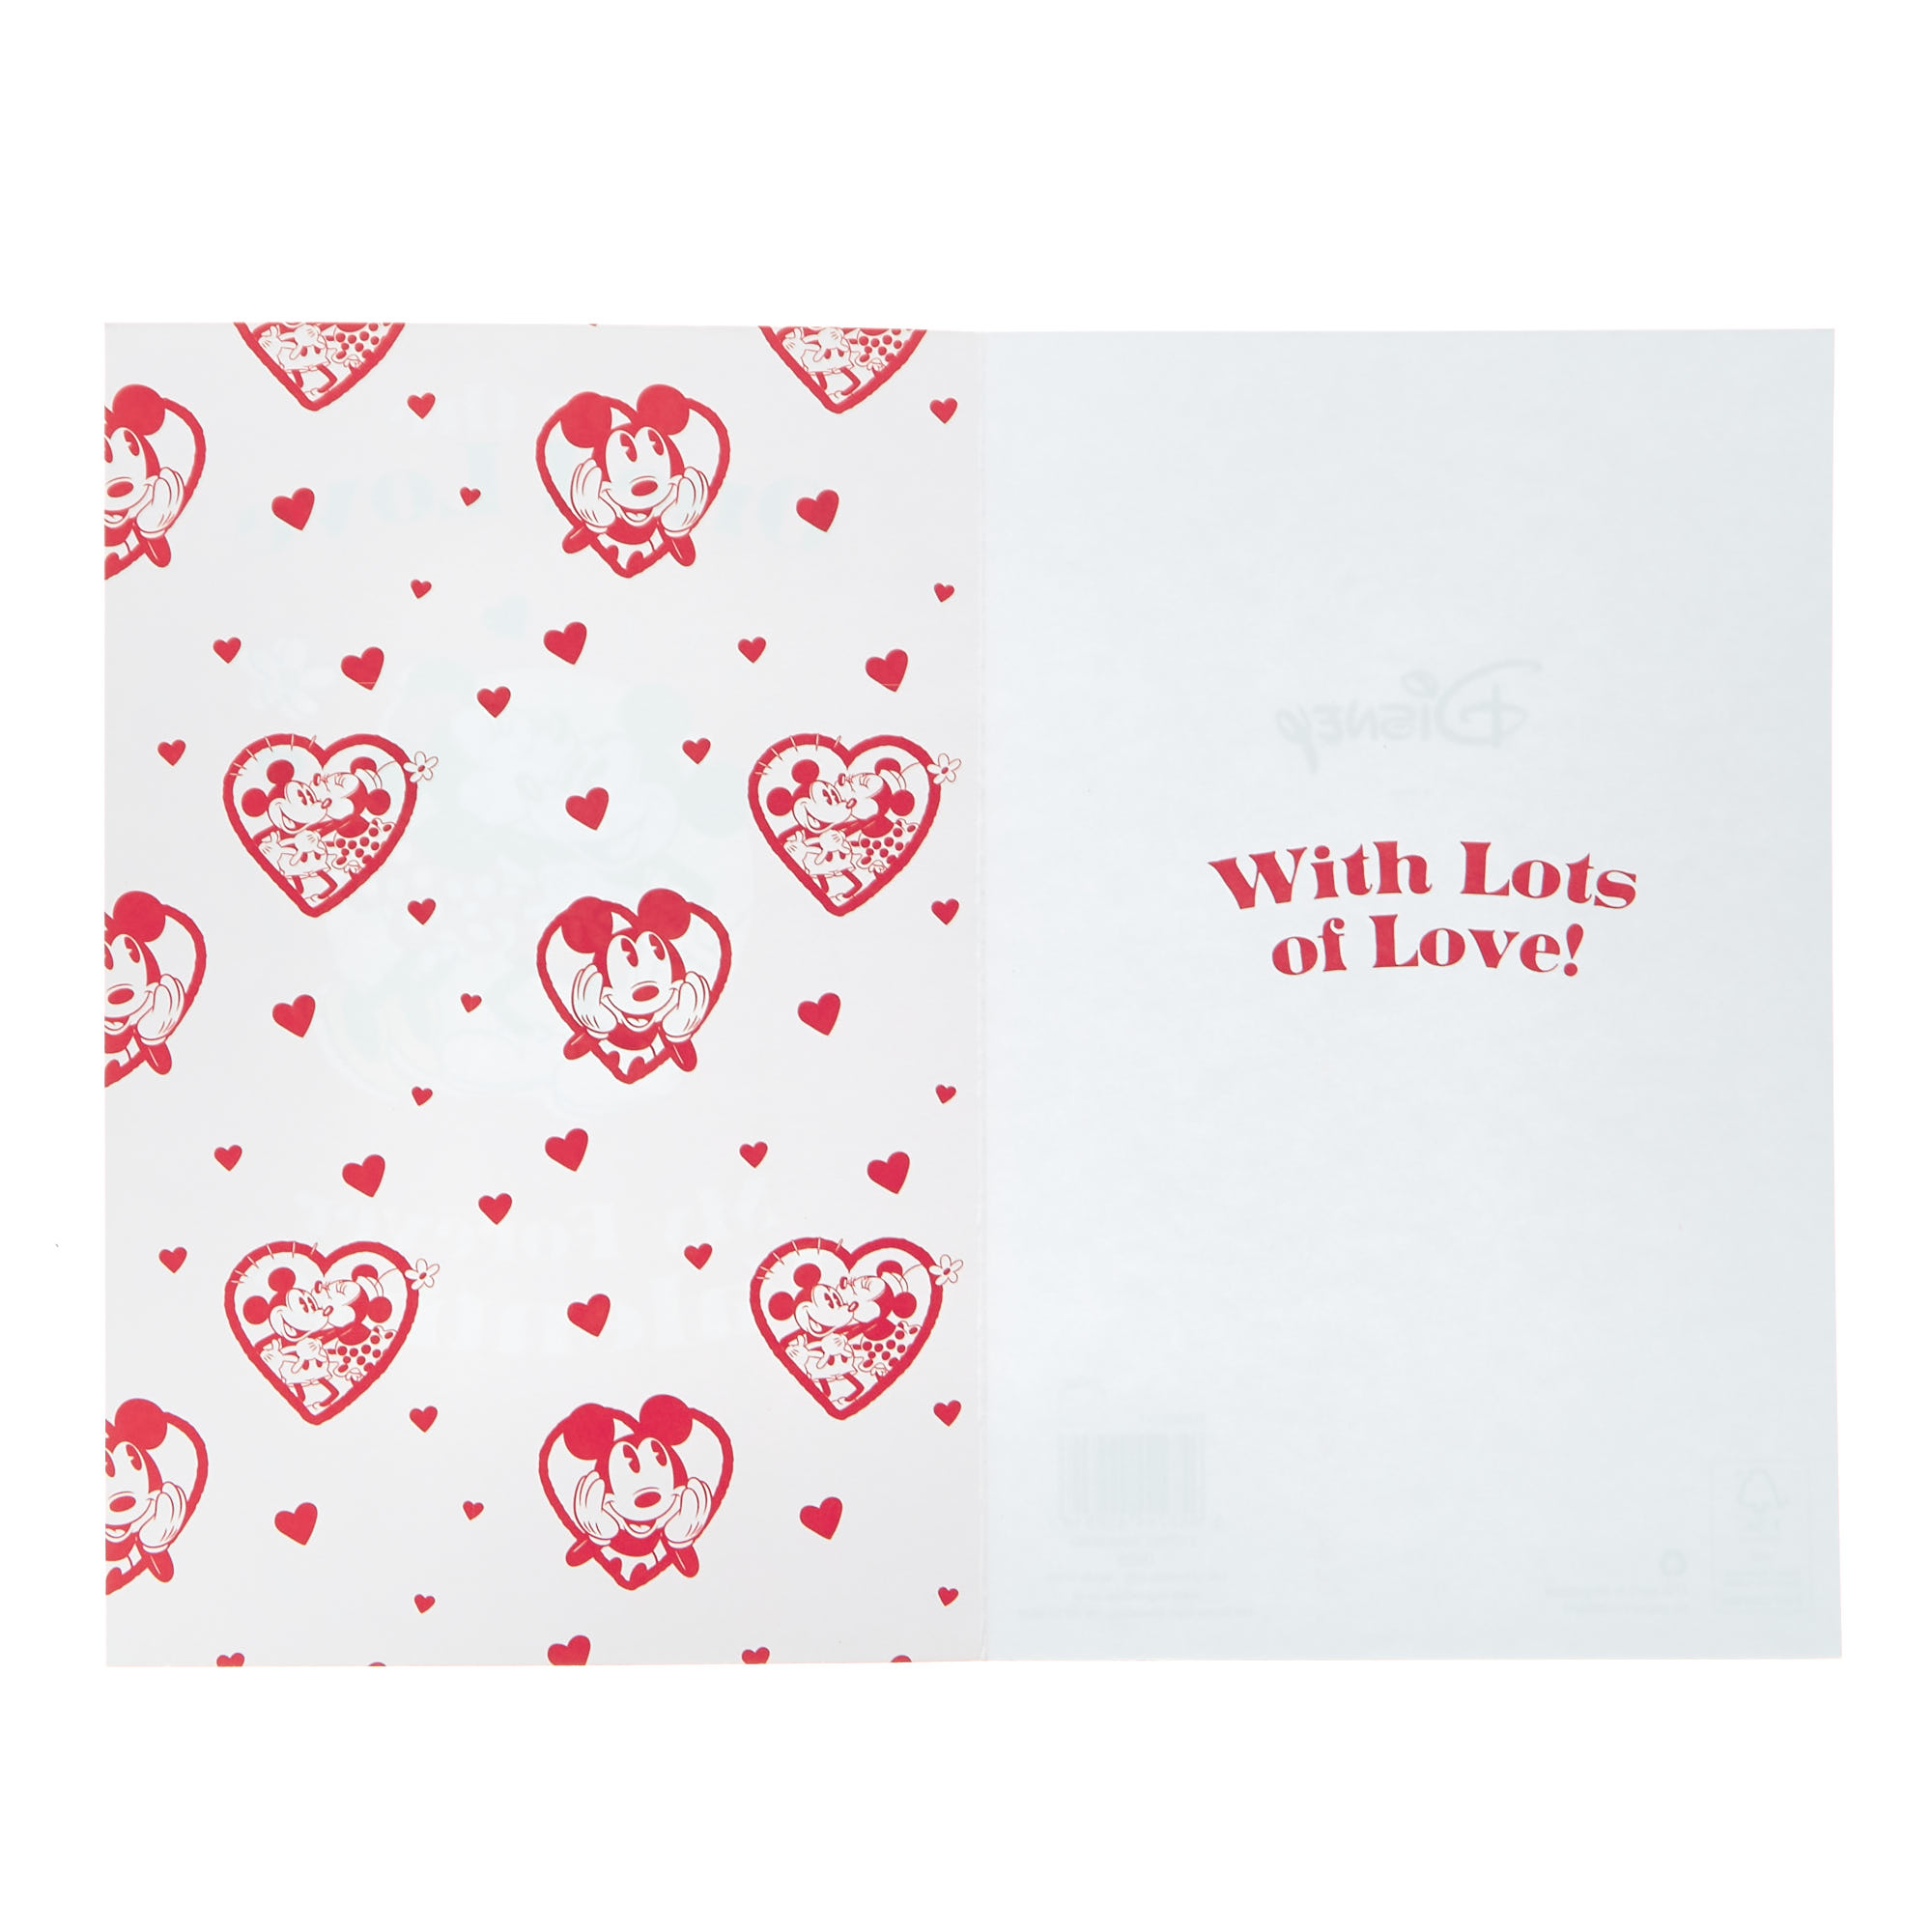 Disney Valentine's Day Card - One I Love Mickey & Minnie